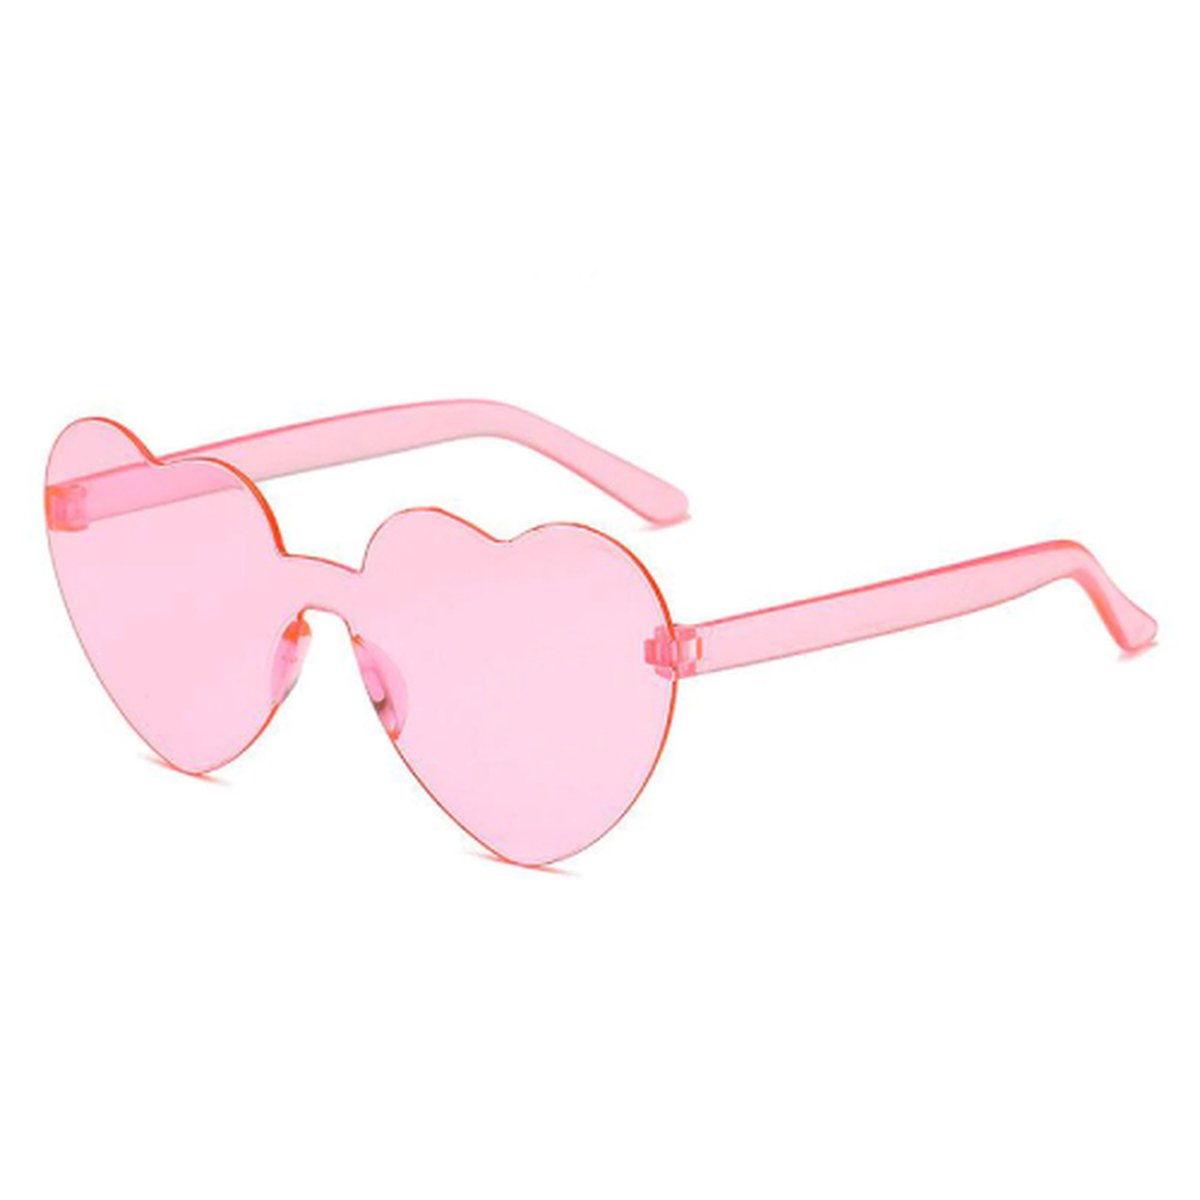 Roze hartjes zonnebril - Merkloos